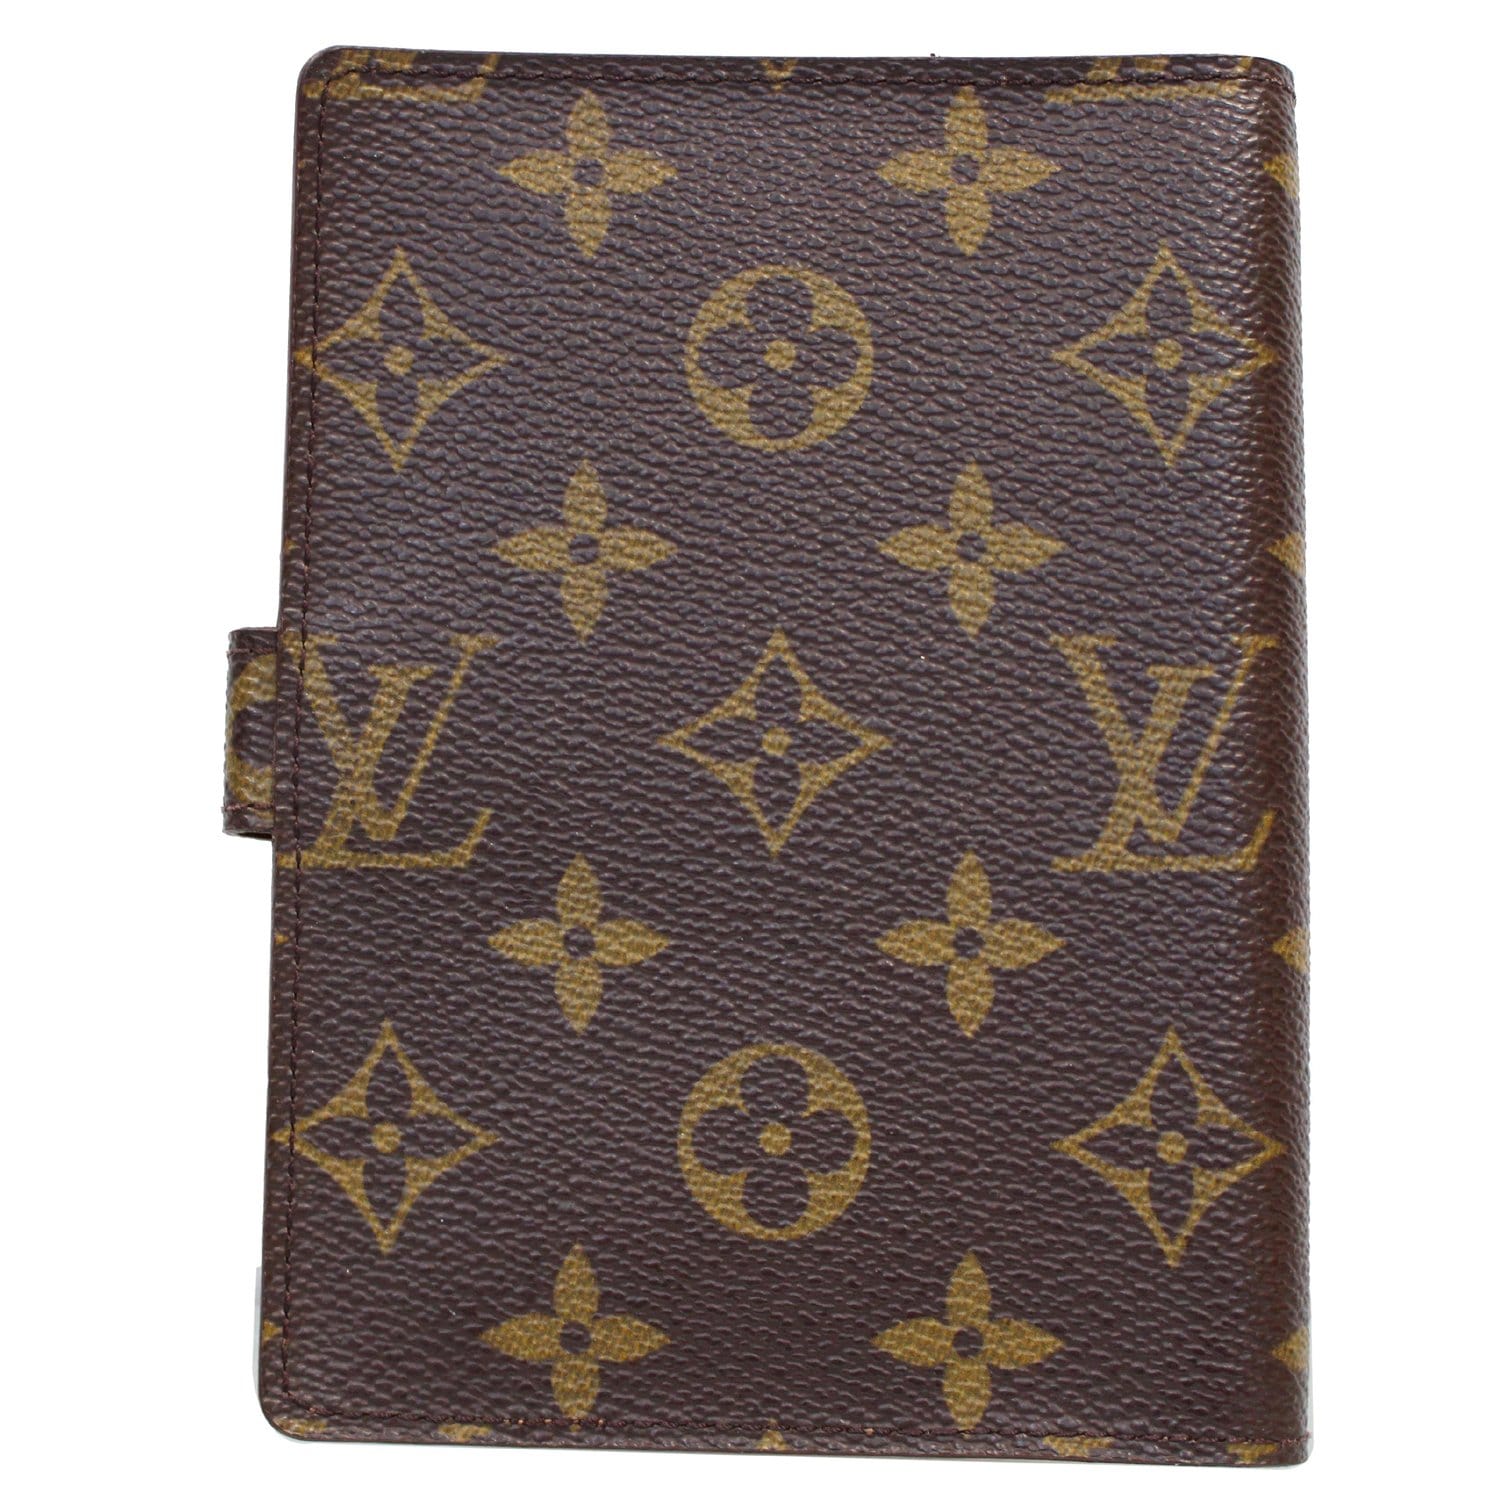 Louis Vuitton, Bags, Authentic Louis Vuitton Agenda Pm Passport Holder  Wallet